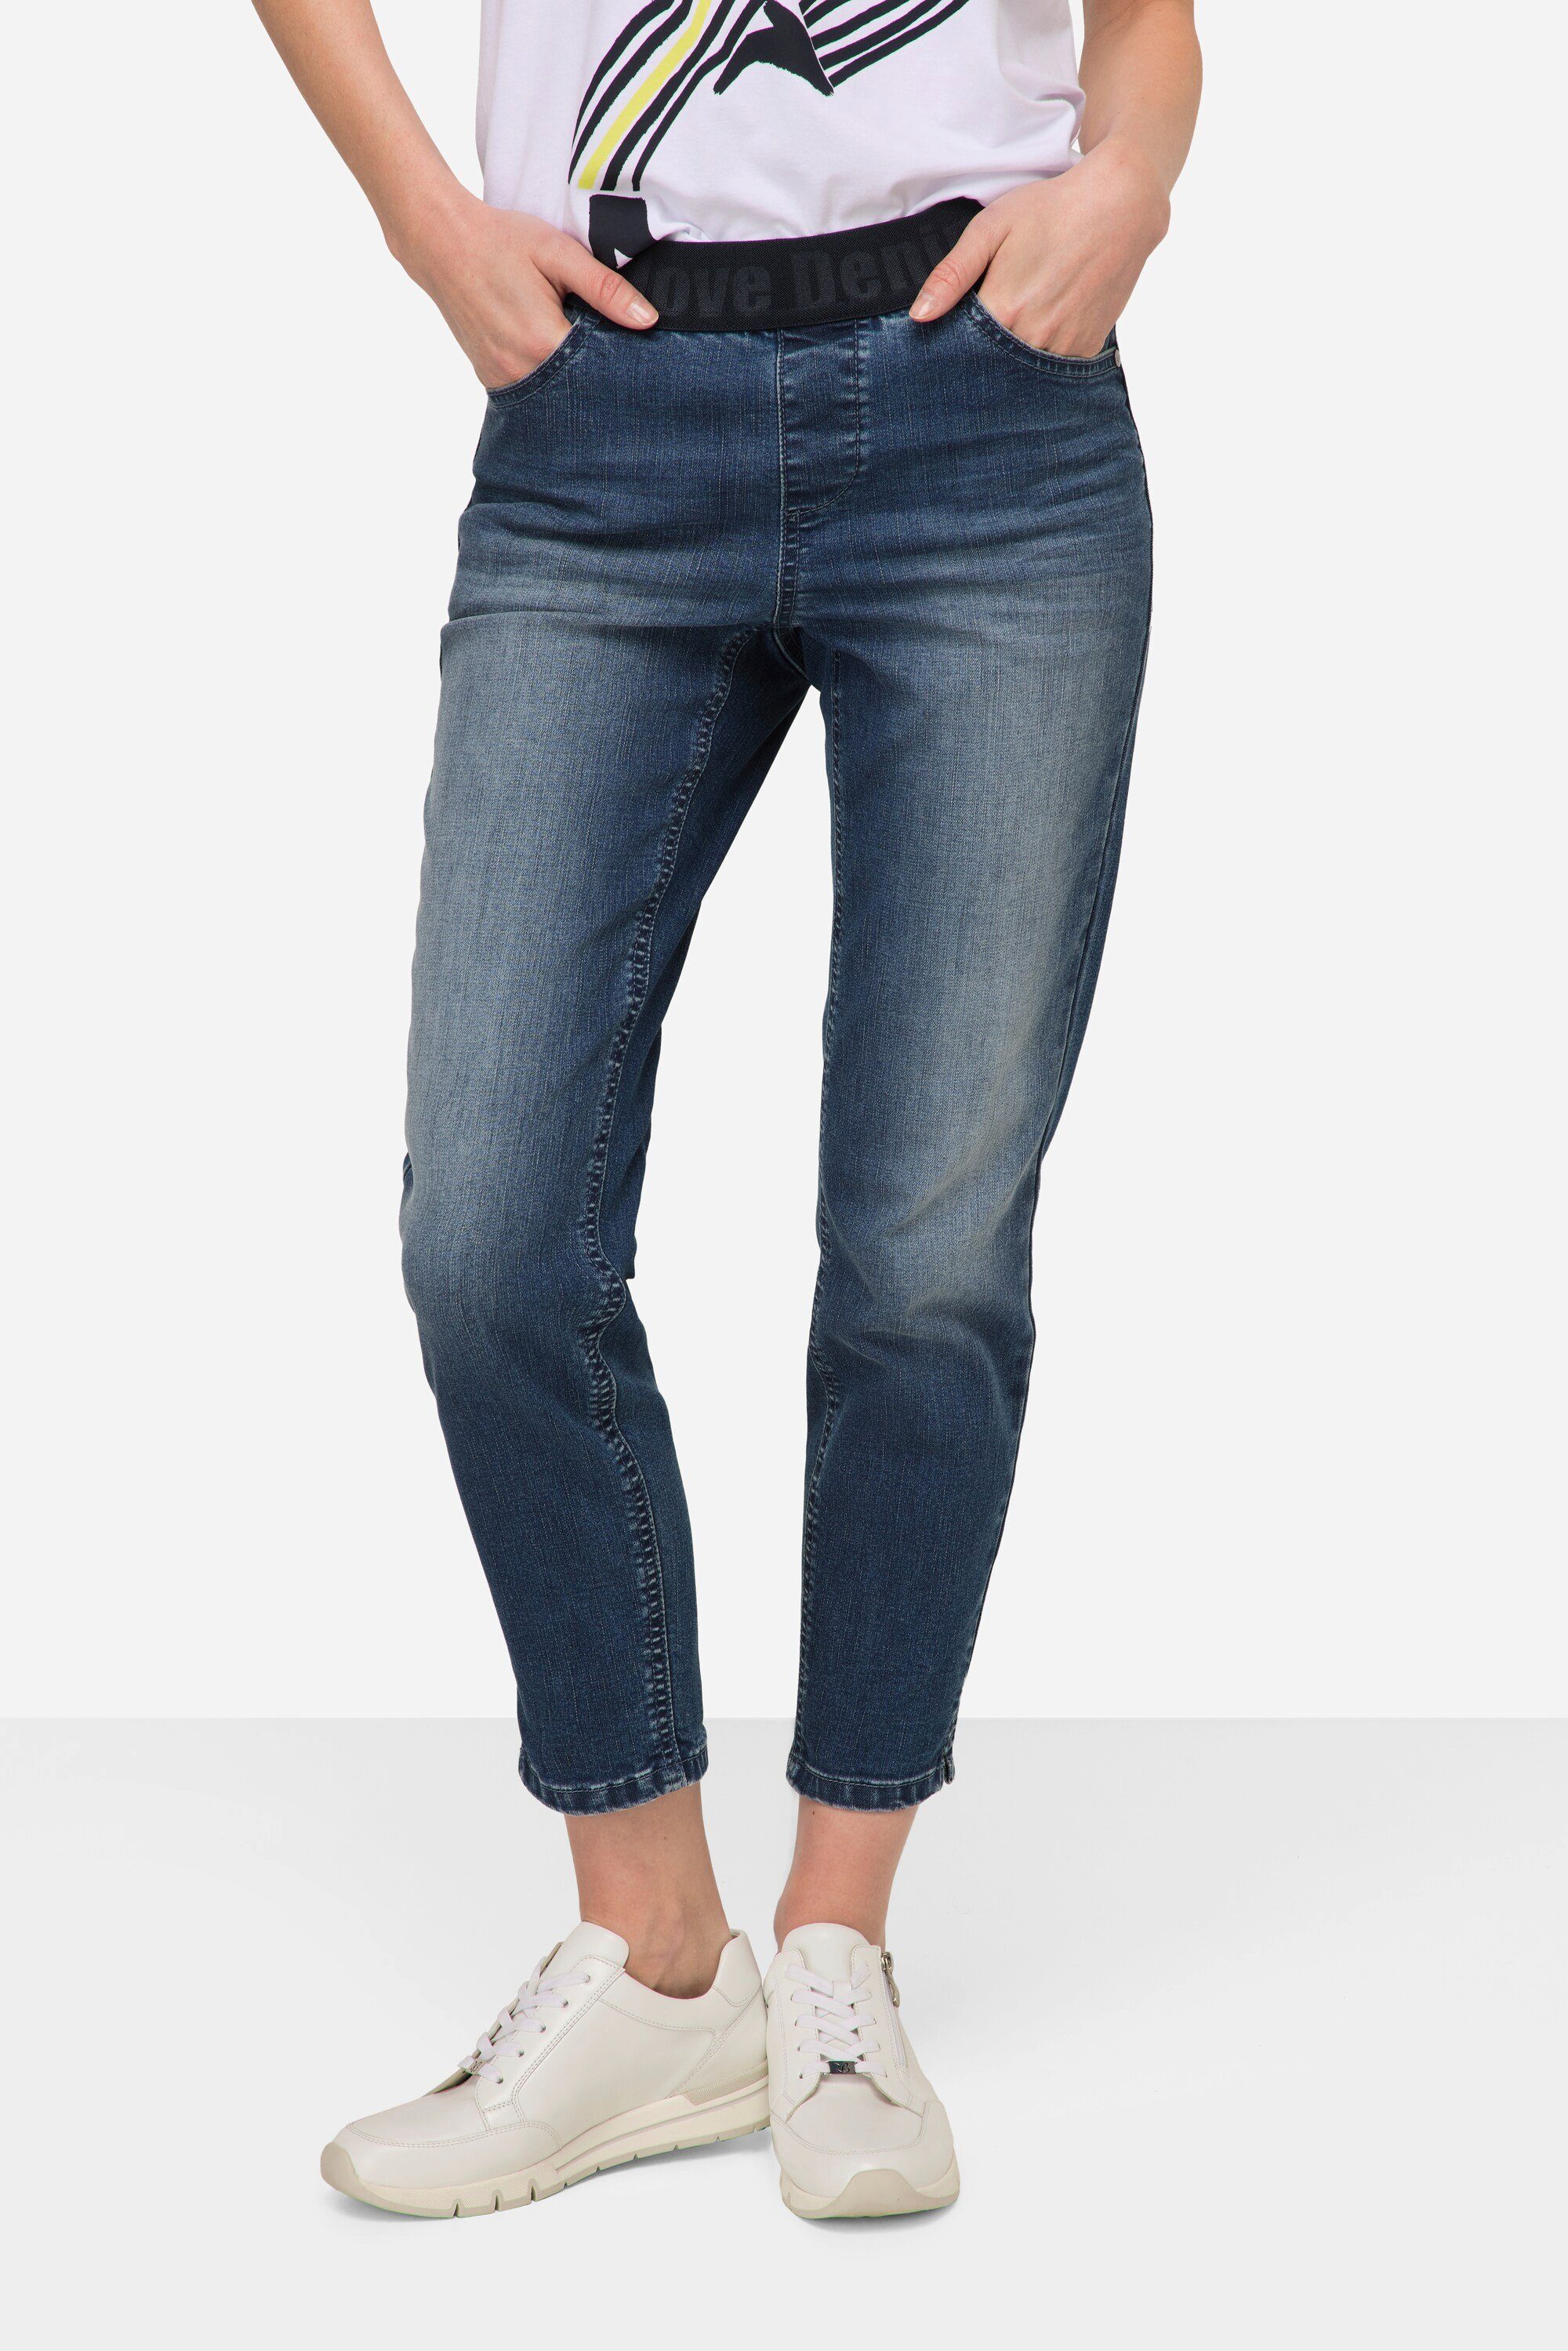 Laurasøn Elastikbund Pocket 4 Jeans Regular-fit-Jeans denim Julia blue